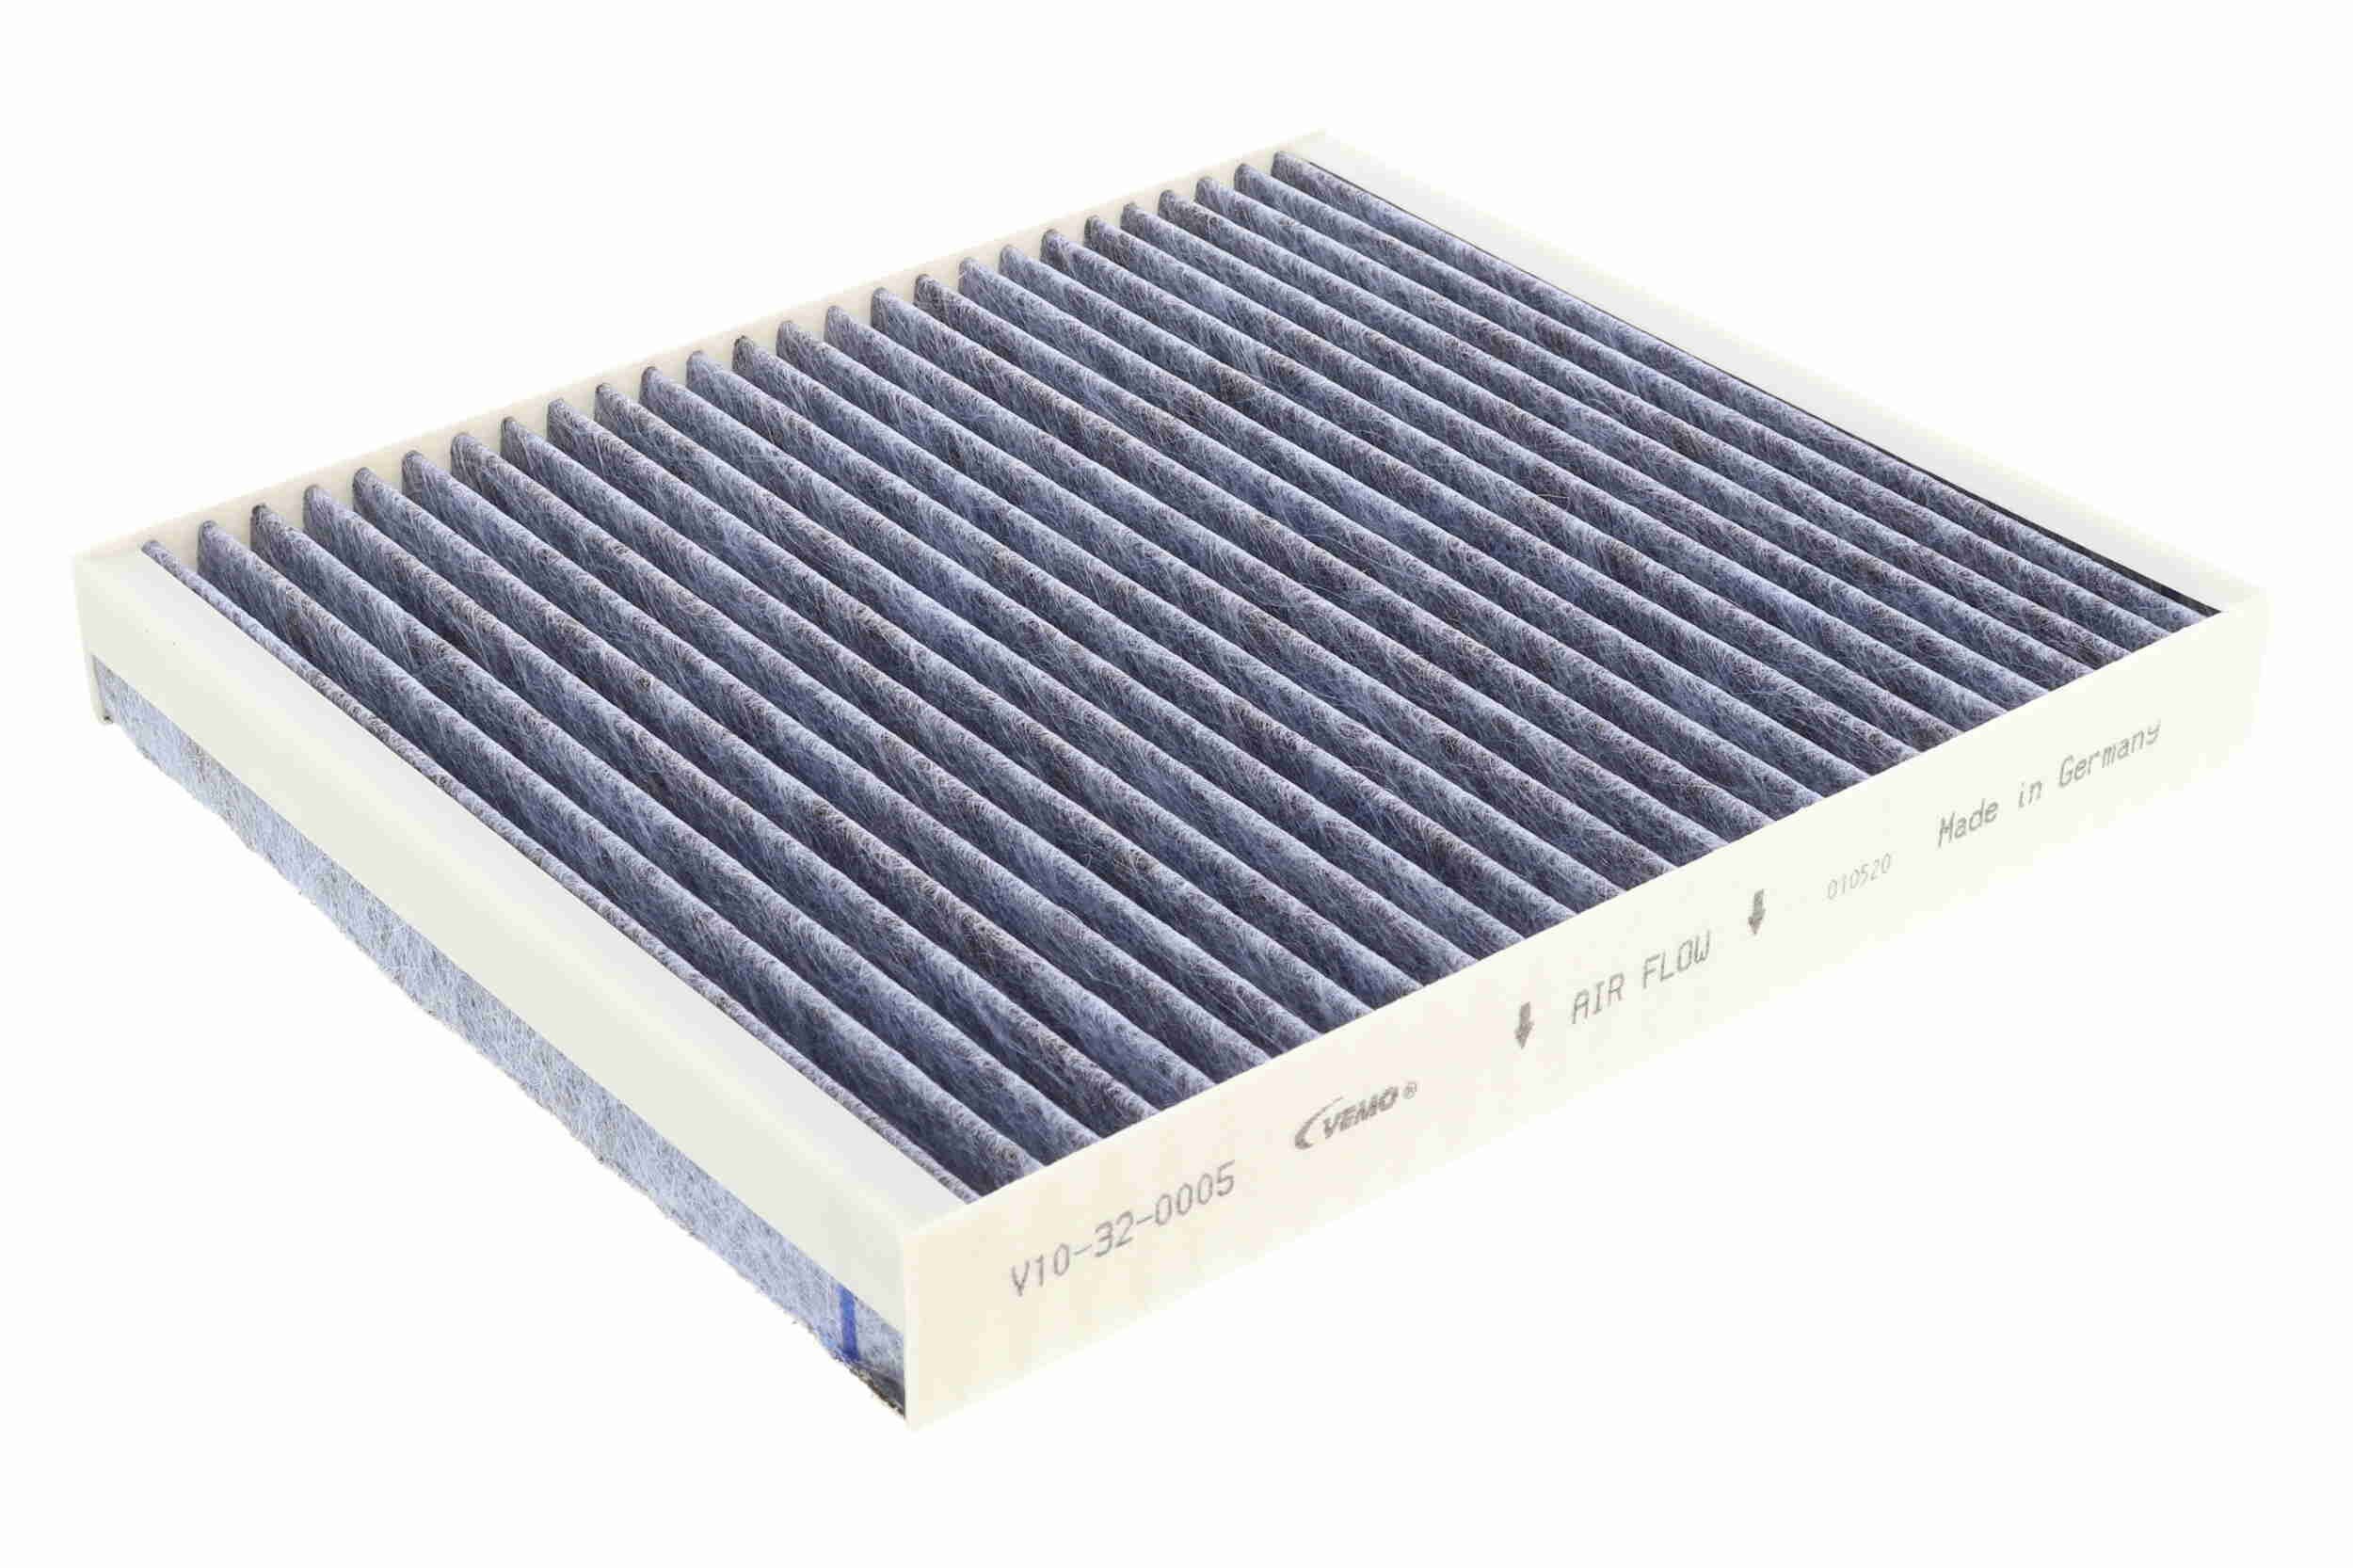 Original V10-32-0005 VEMO AC filter AUDI